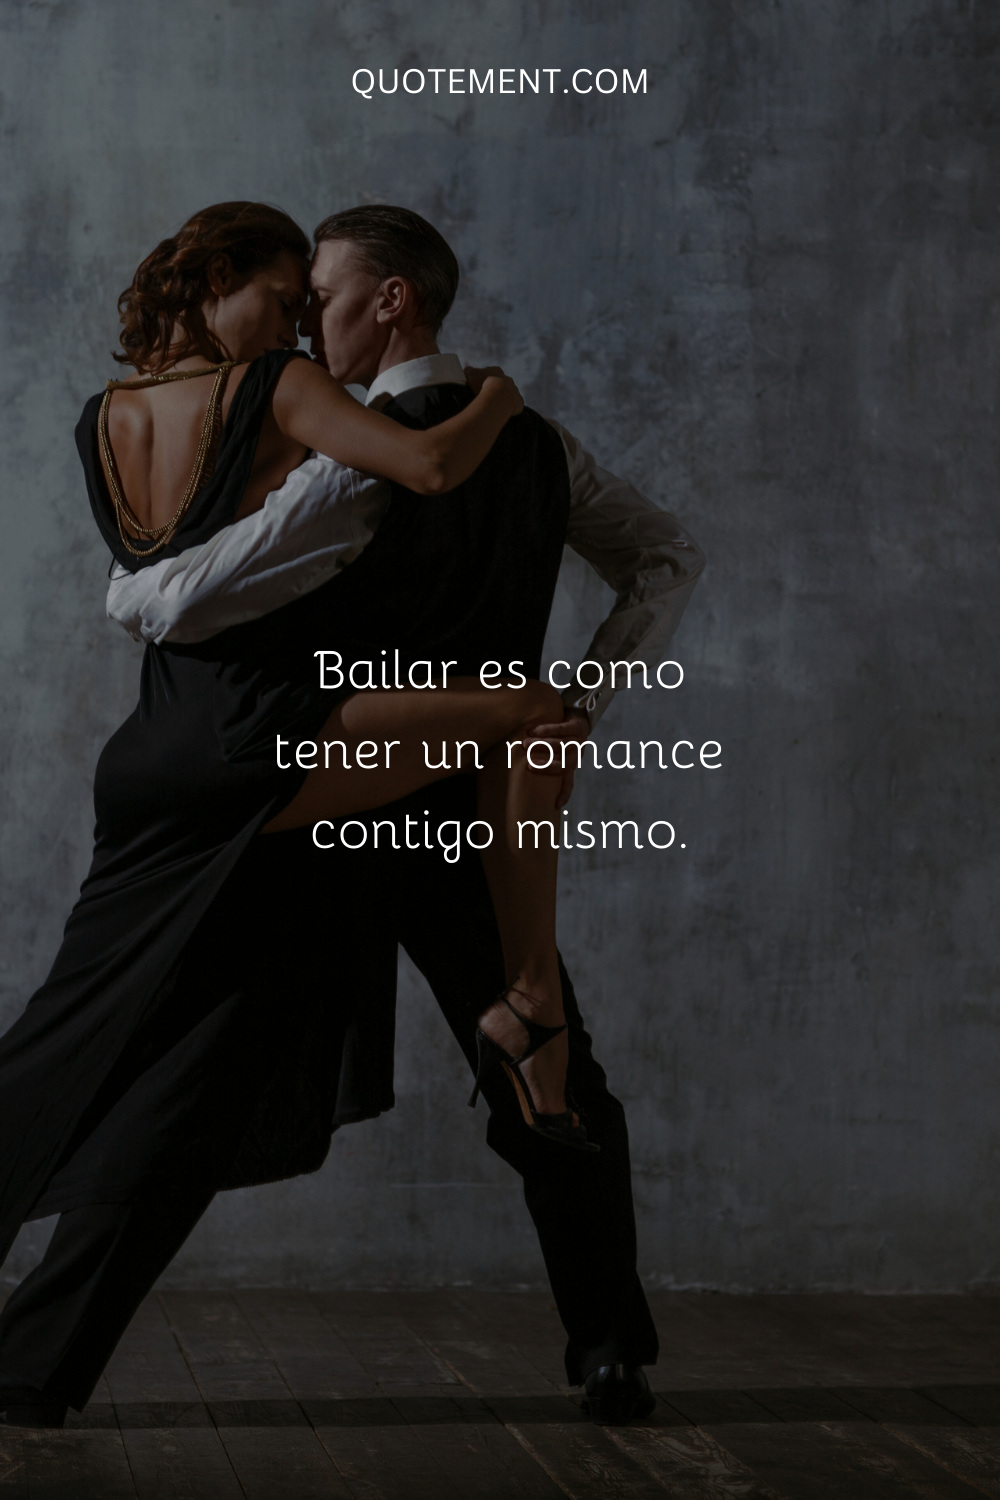 Bailar es como tener un romance contigo mismo